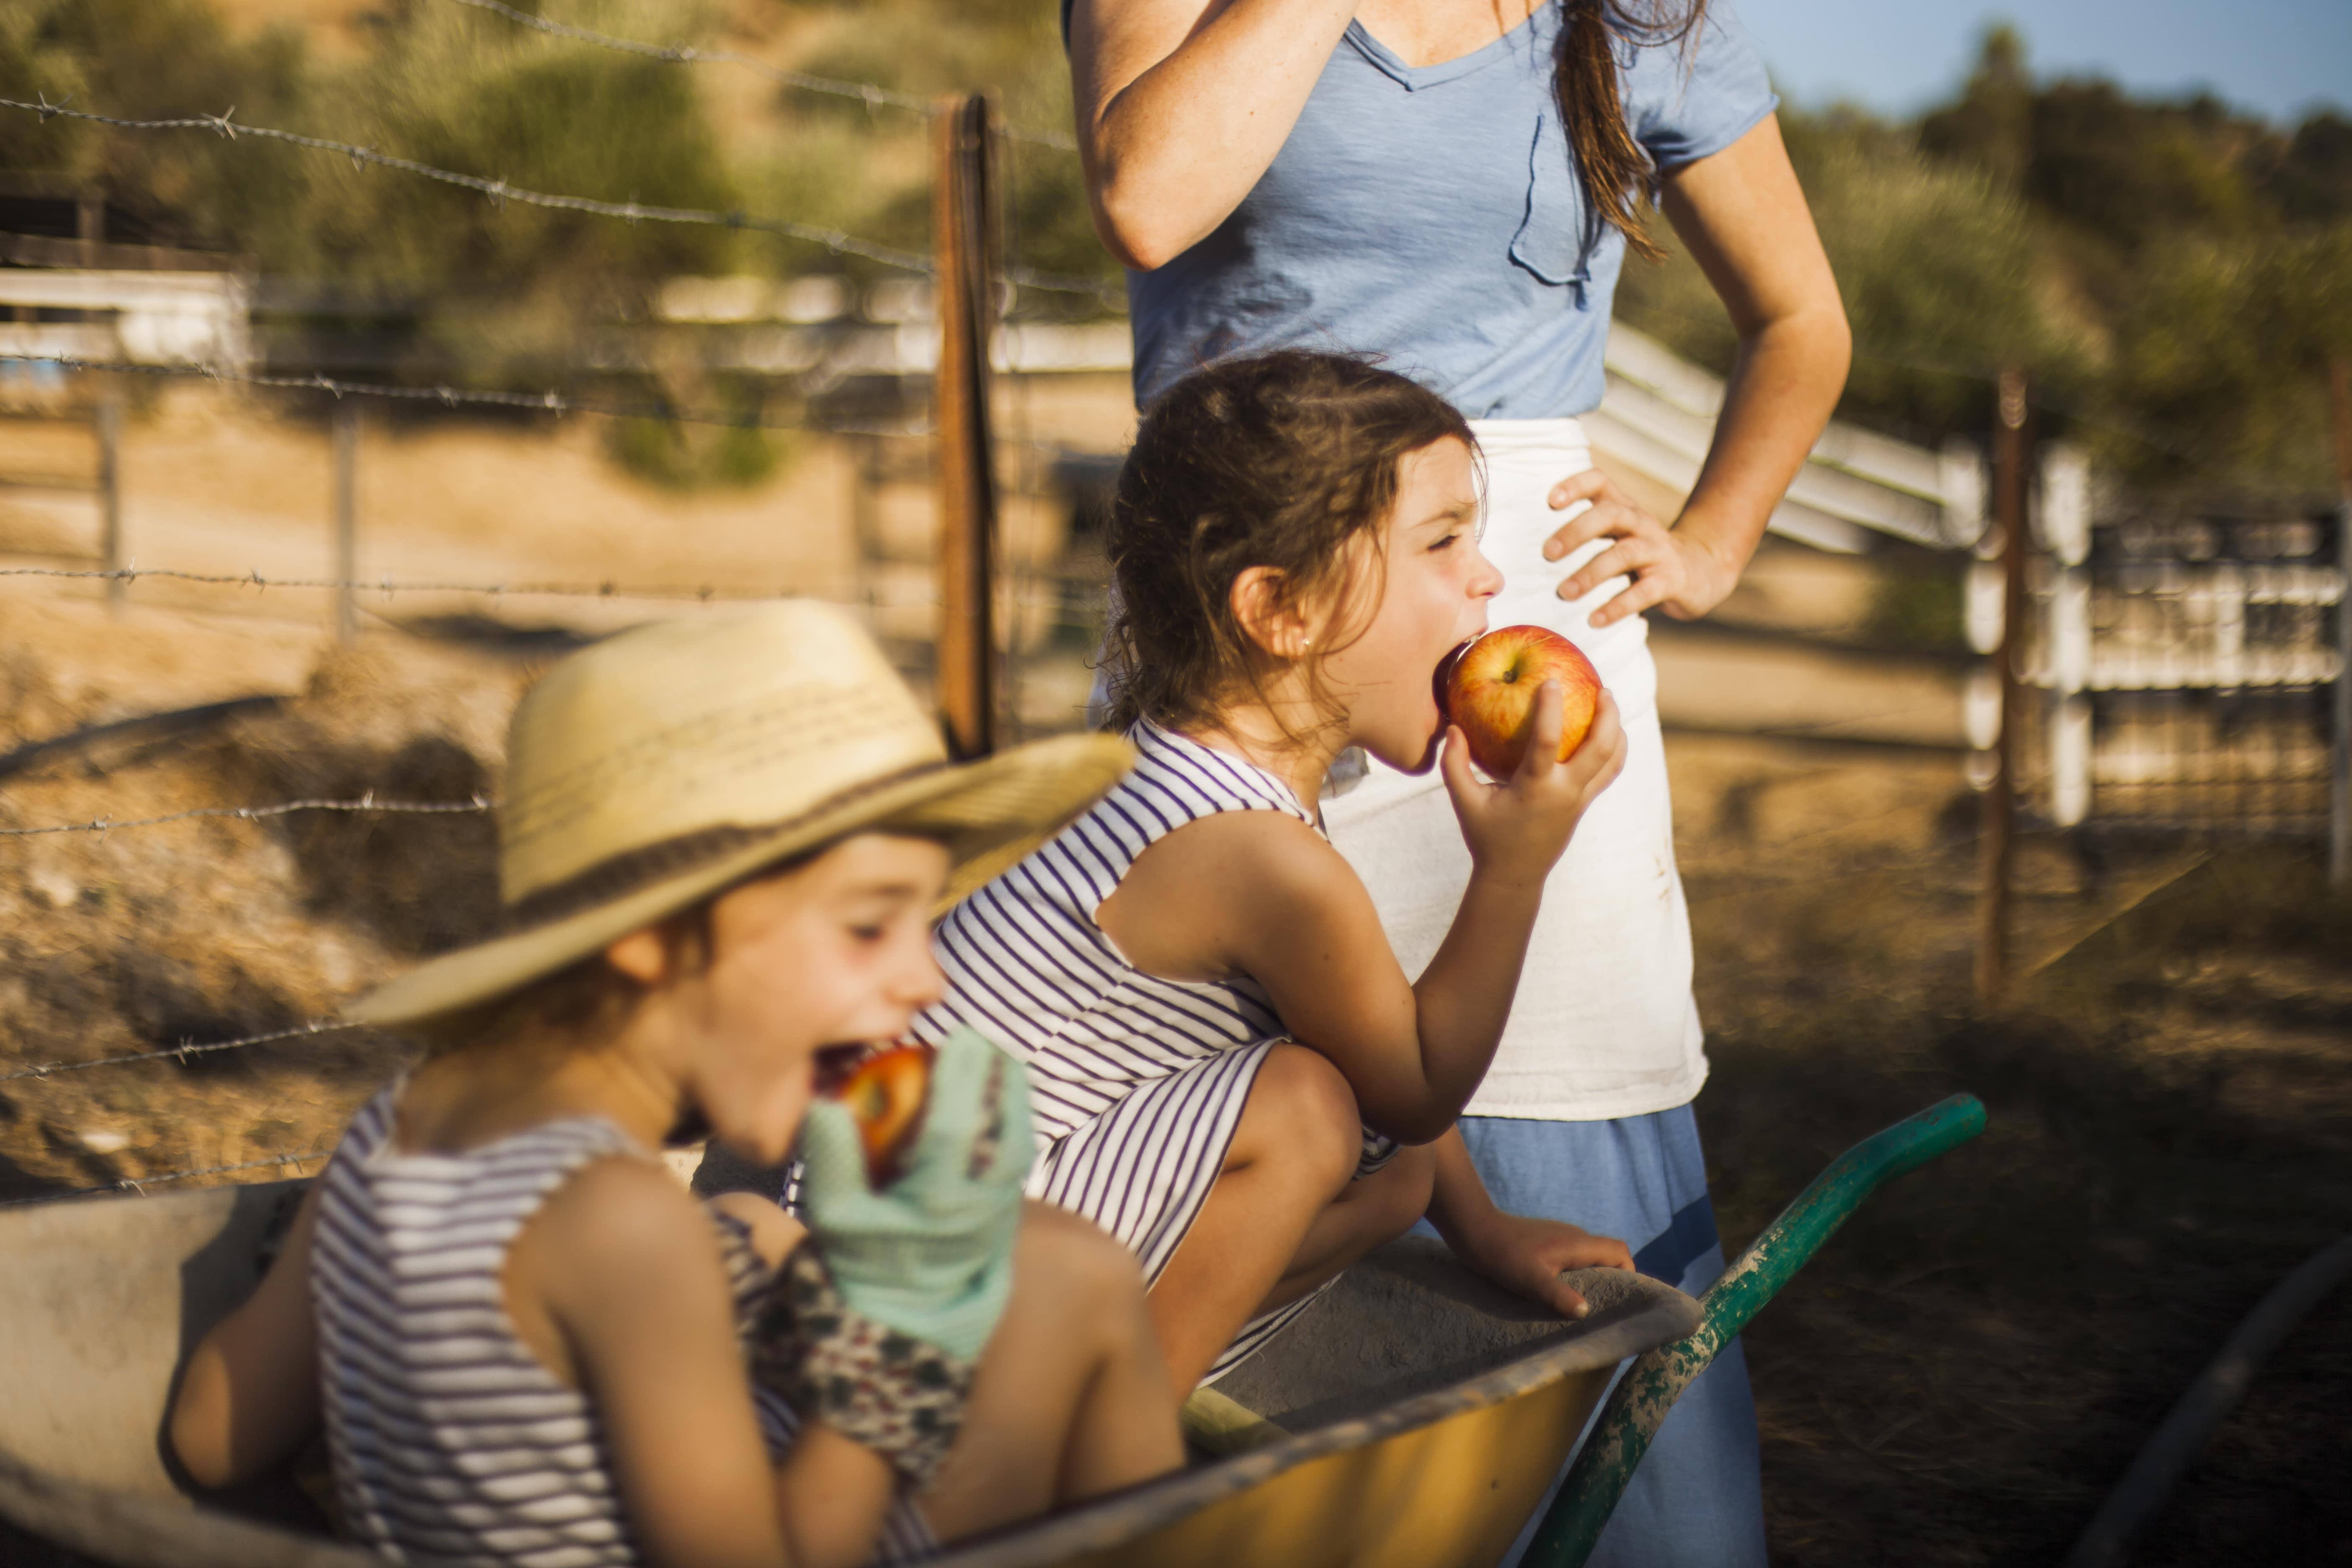 Bambini mangiano una mela dentro una carriola in campagna accanto alla mamma 